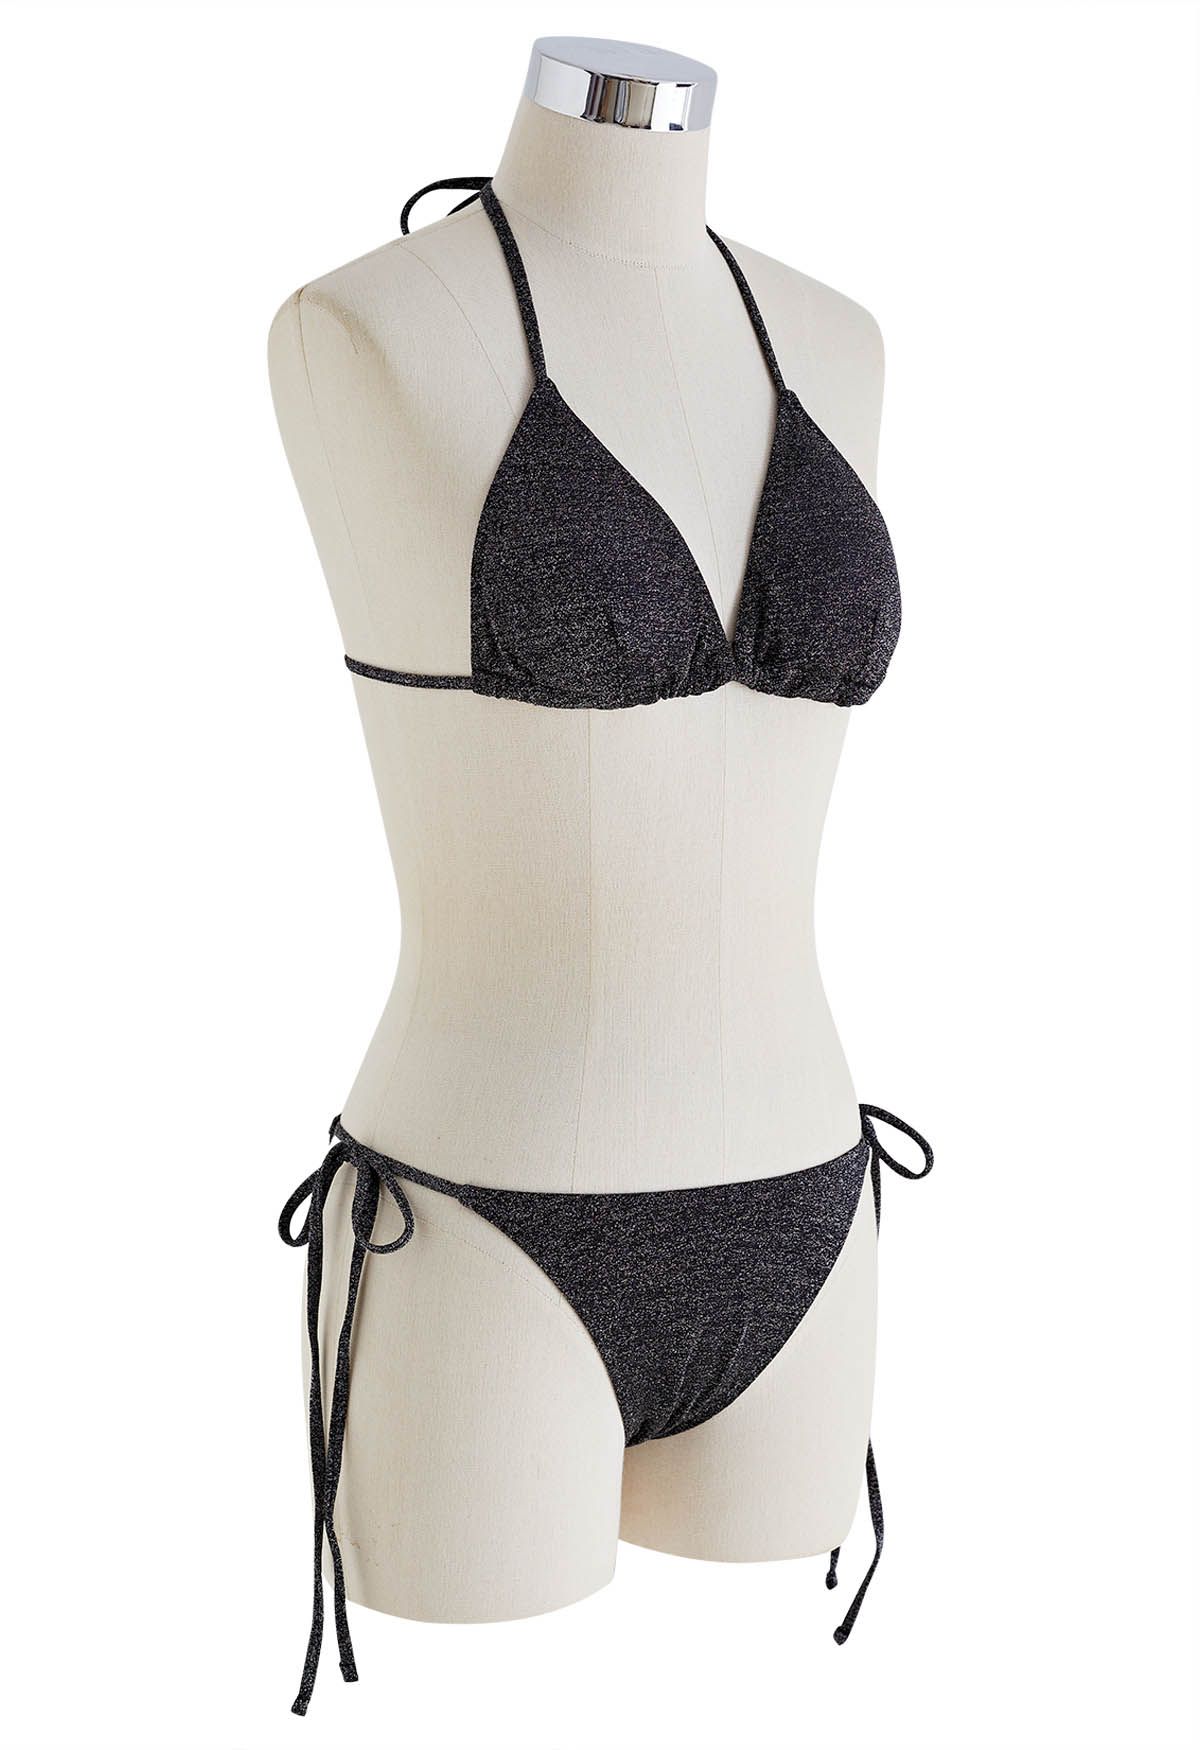 Deslumbrante conjunto de bikini con cordón metálico en negro